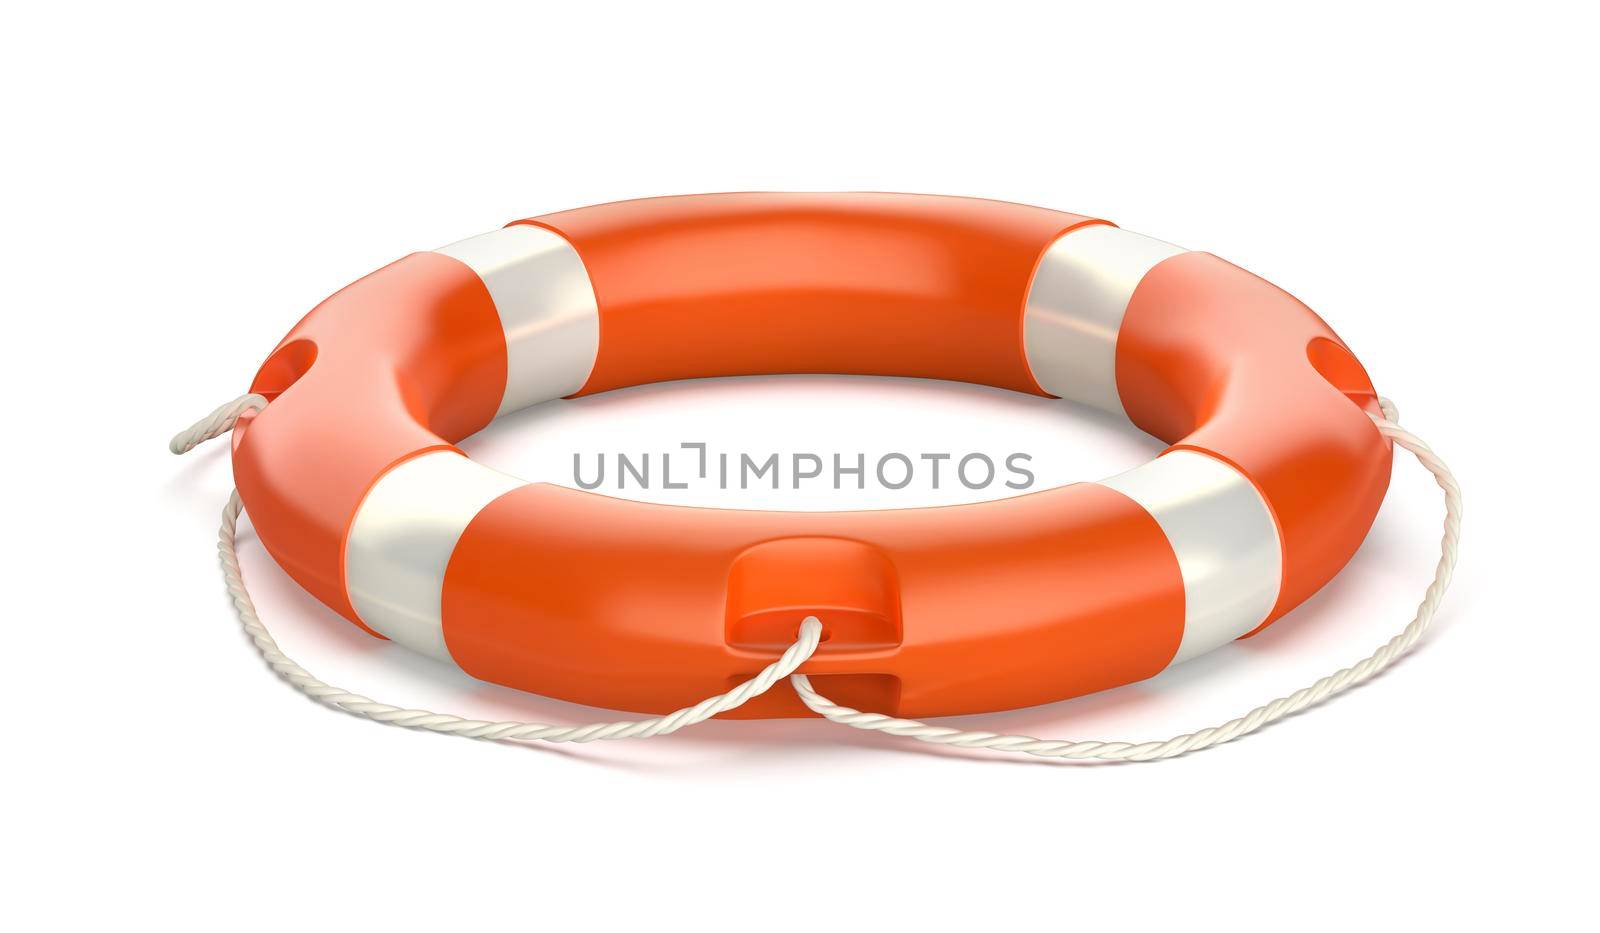 Lifebuoy ring on white background